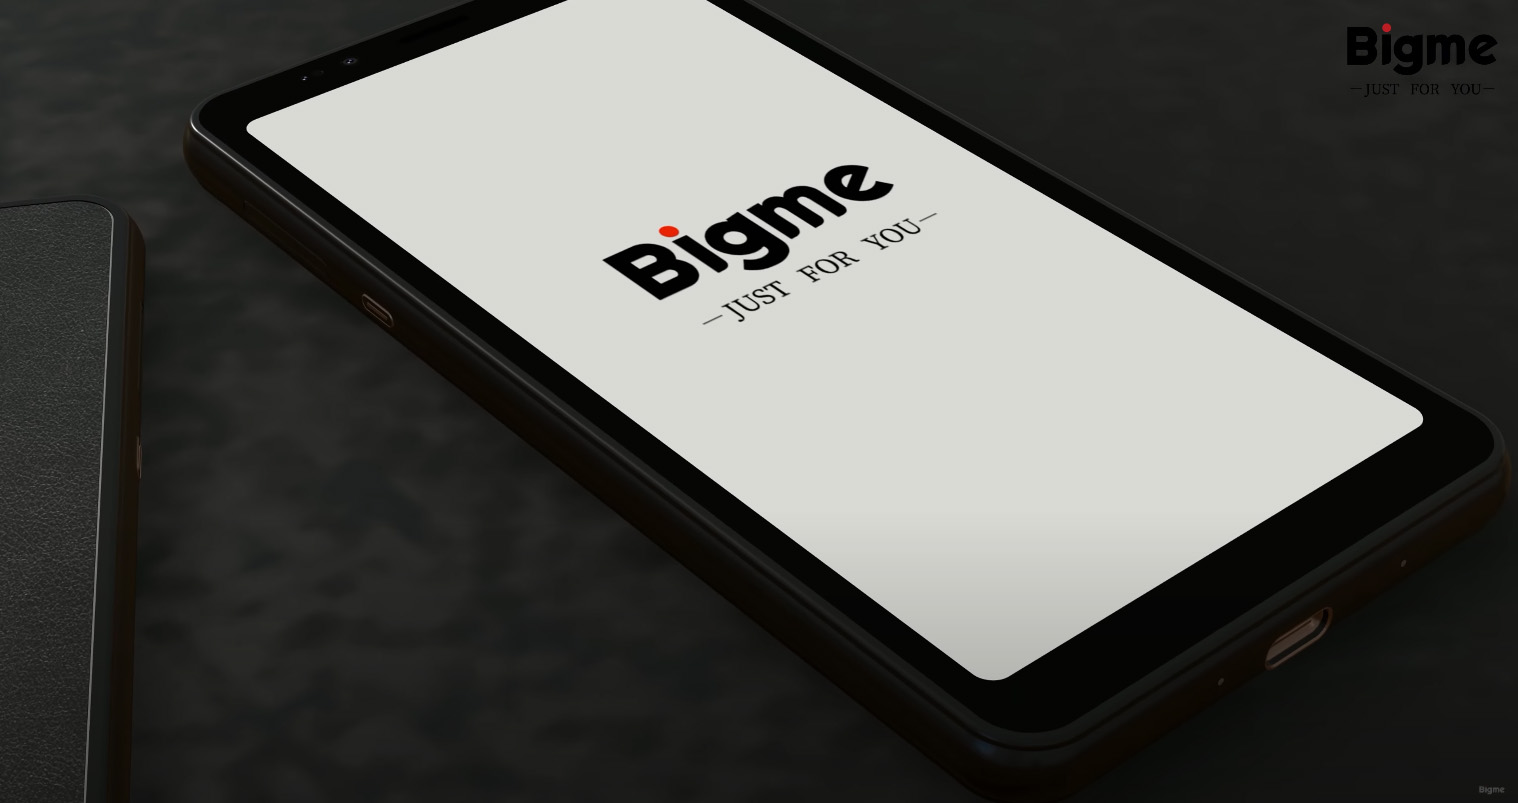 Bigme prezentuje telefon z kolorowym ekranem E Ink